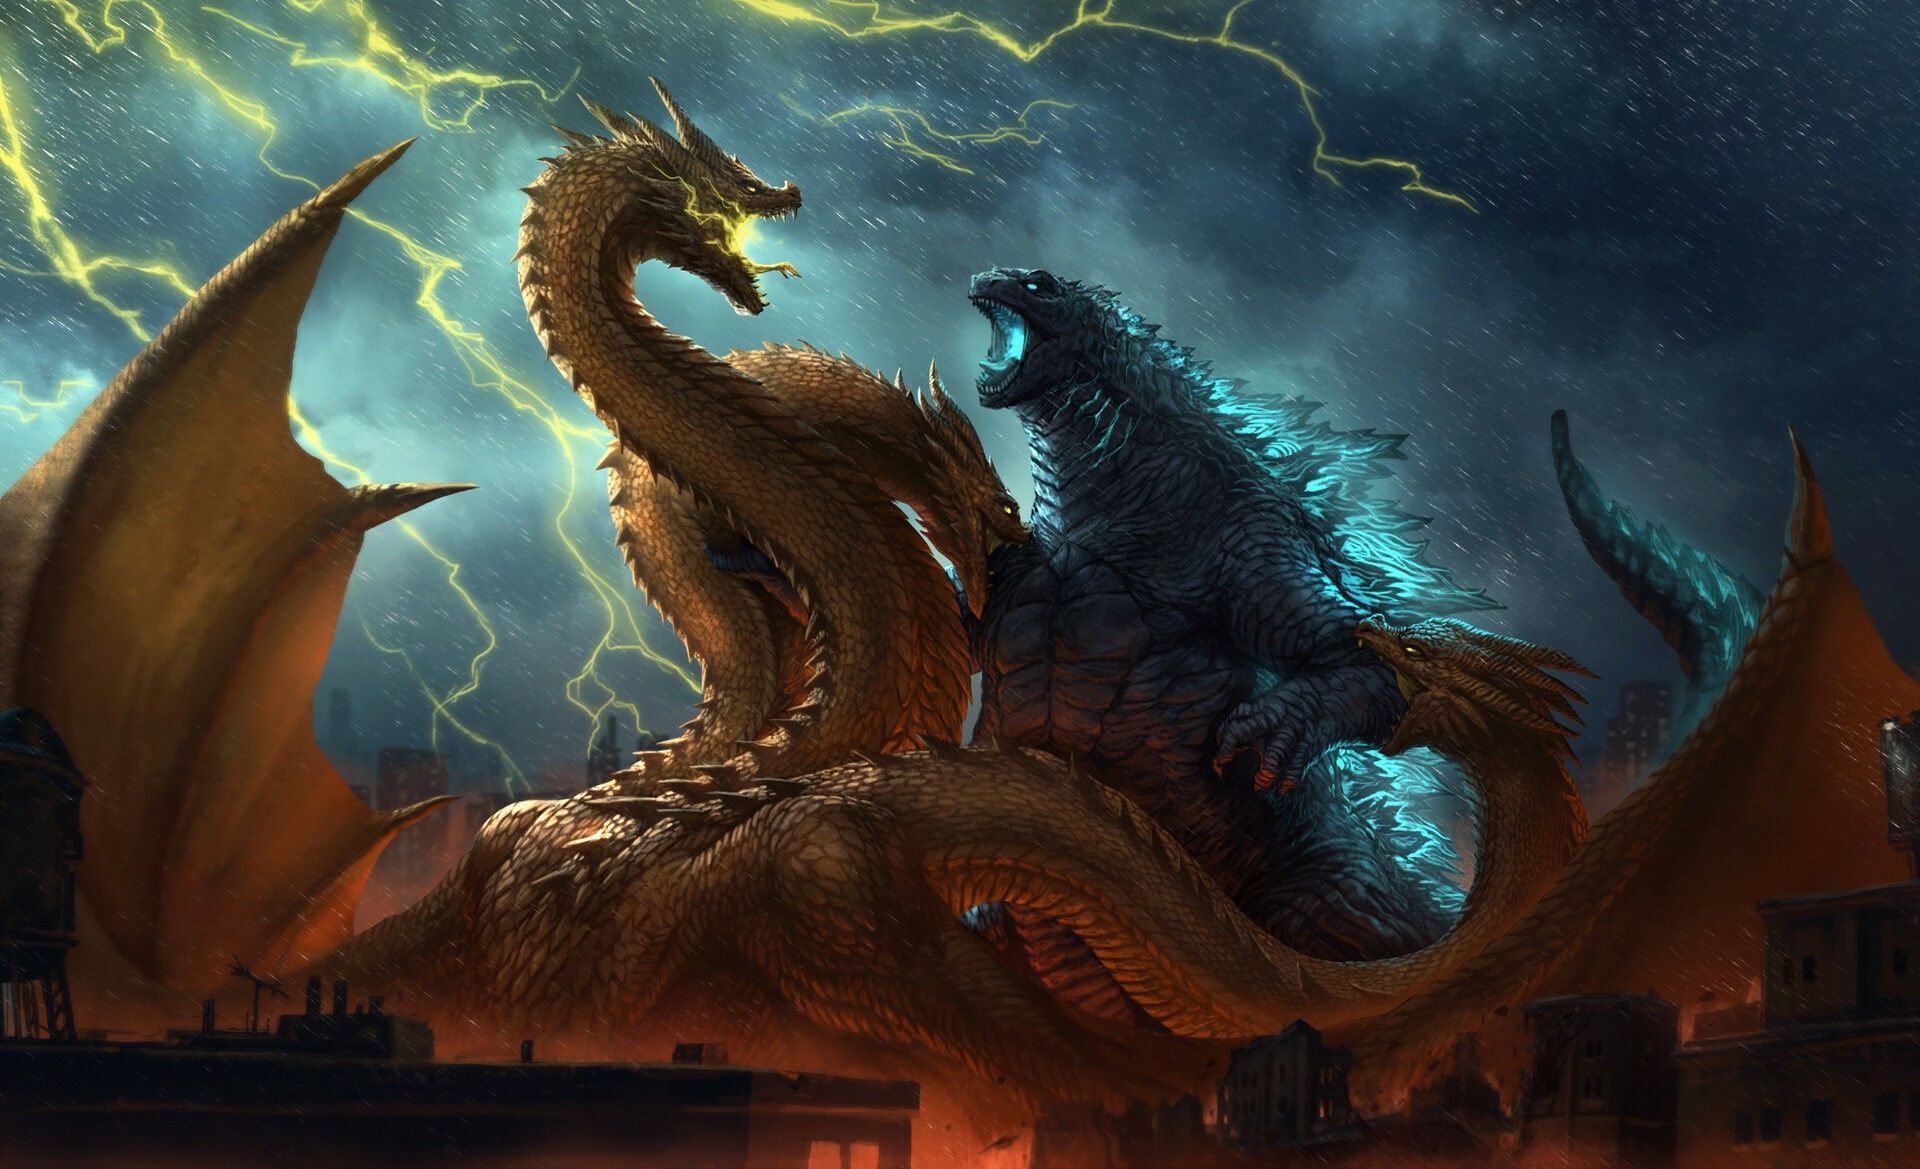 Kaiju. Godzilla vs king ghidorah, Godzilla wallpaper, Kaiju monsters